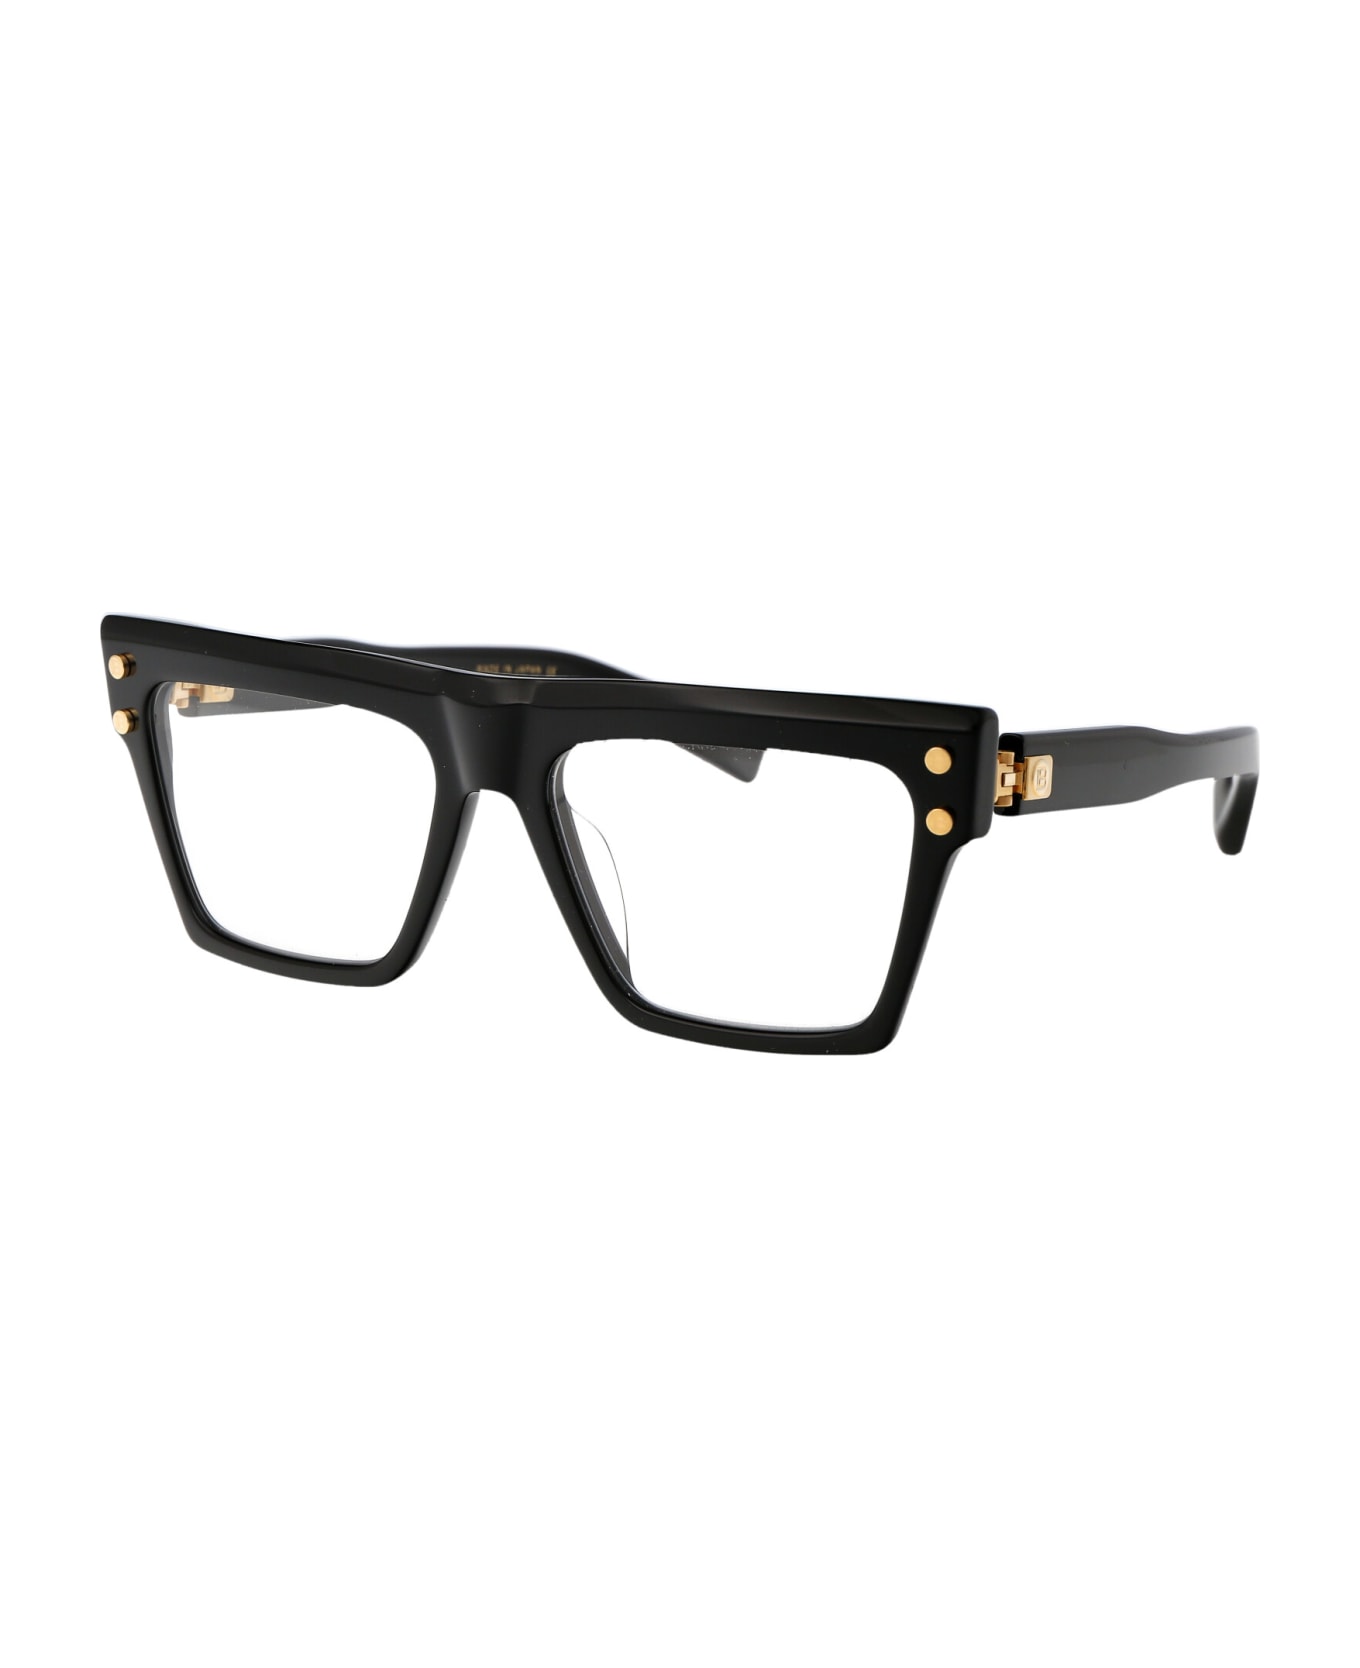 Balmain B - V Glasses - 121A BLK GLD